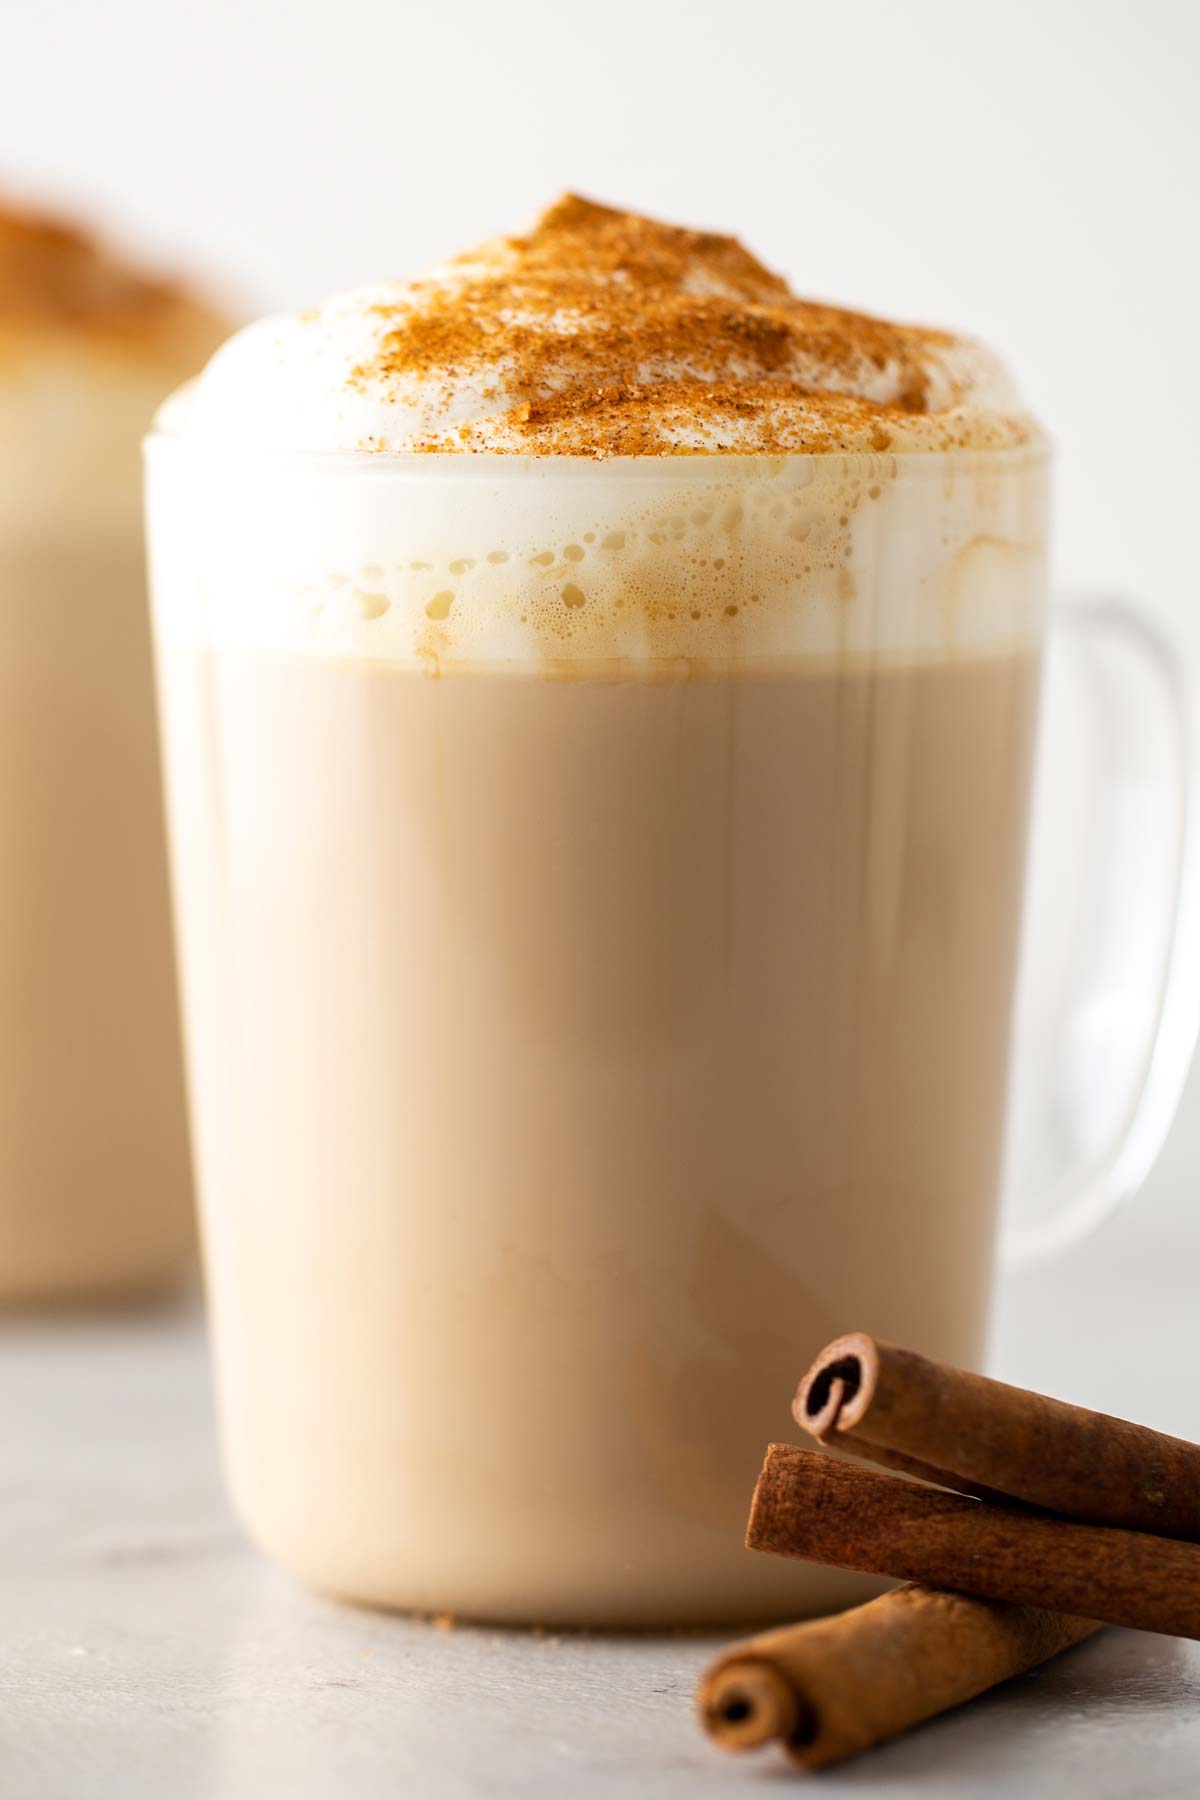 Minuman kopi Starbucks Cinnamon Dolce Latte dalam gelas mug dengan whipped cream dan topping kayu manis.